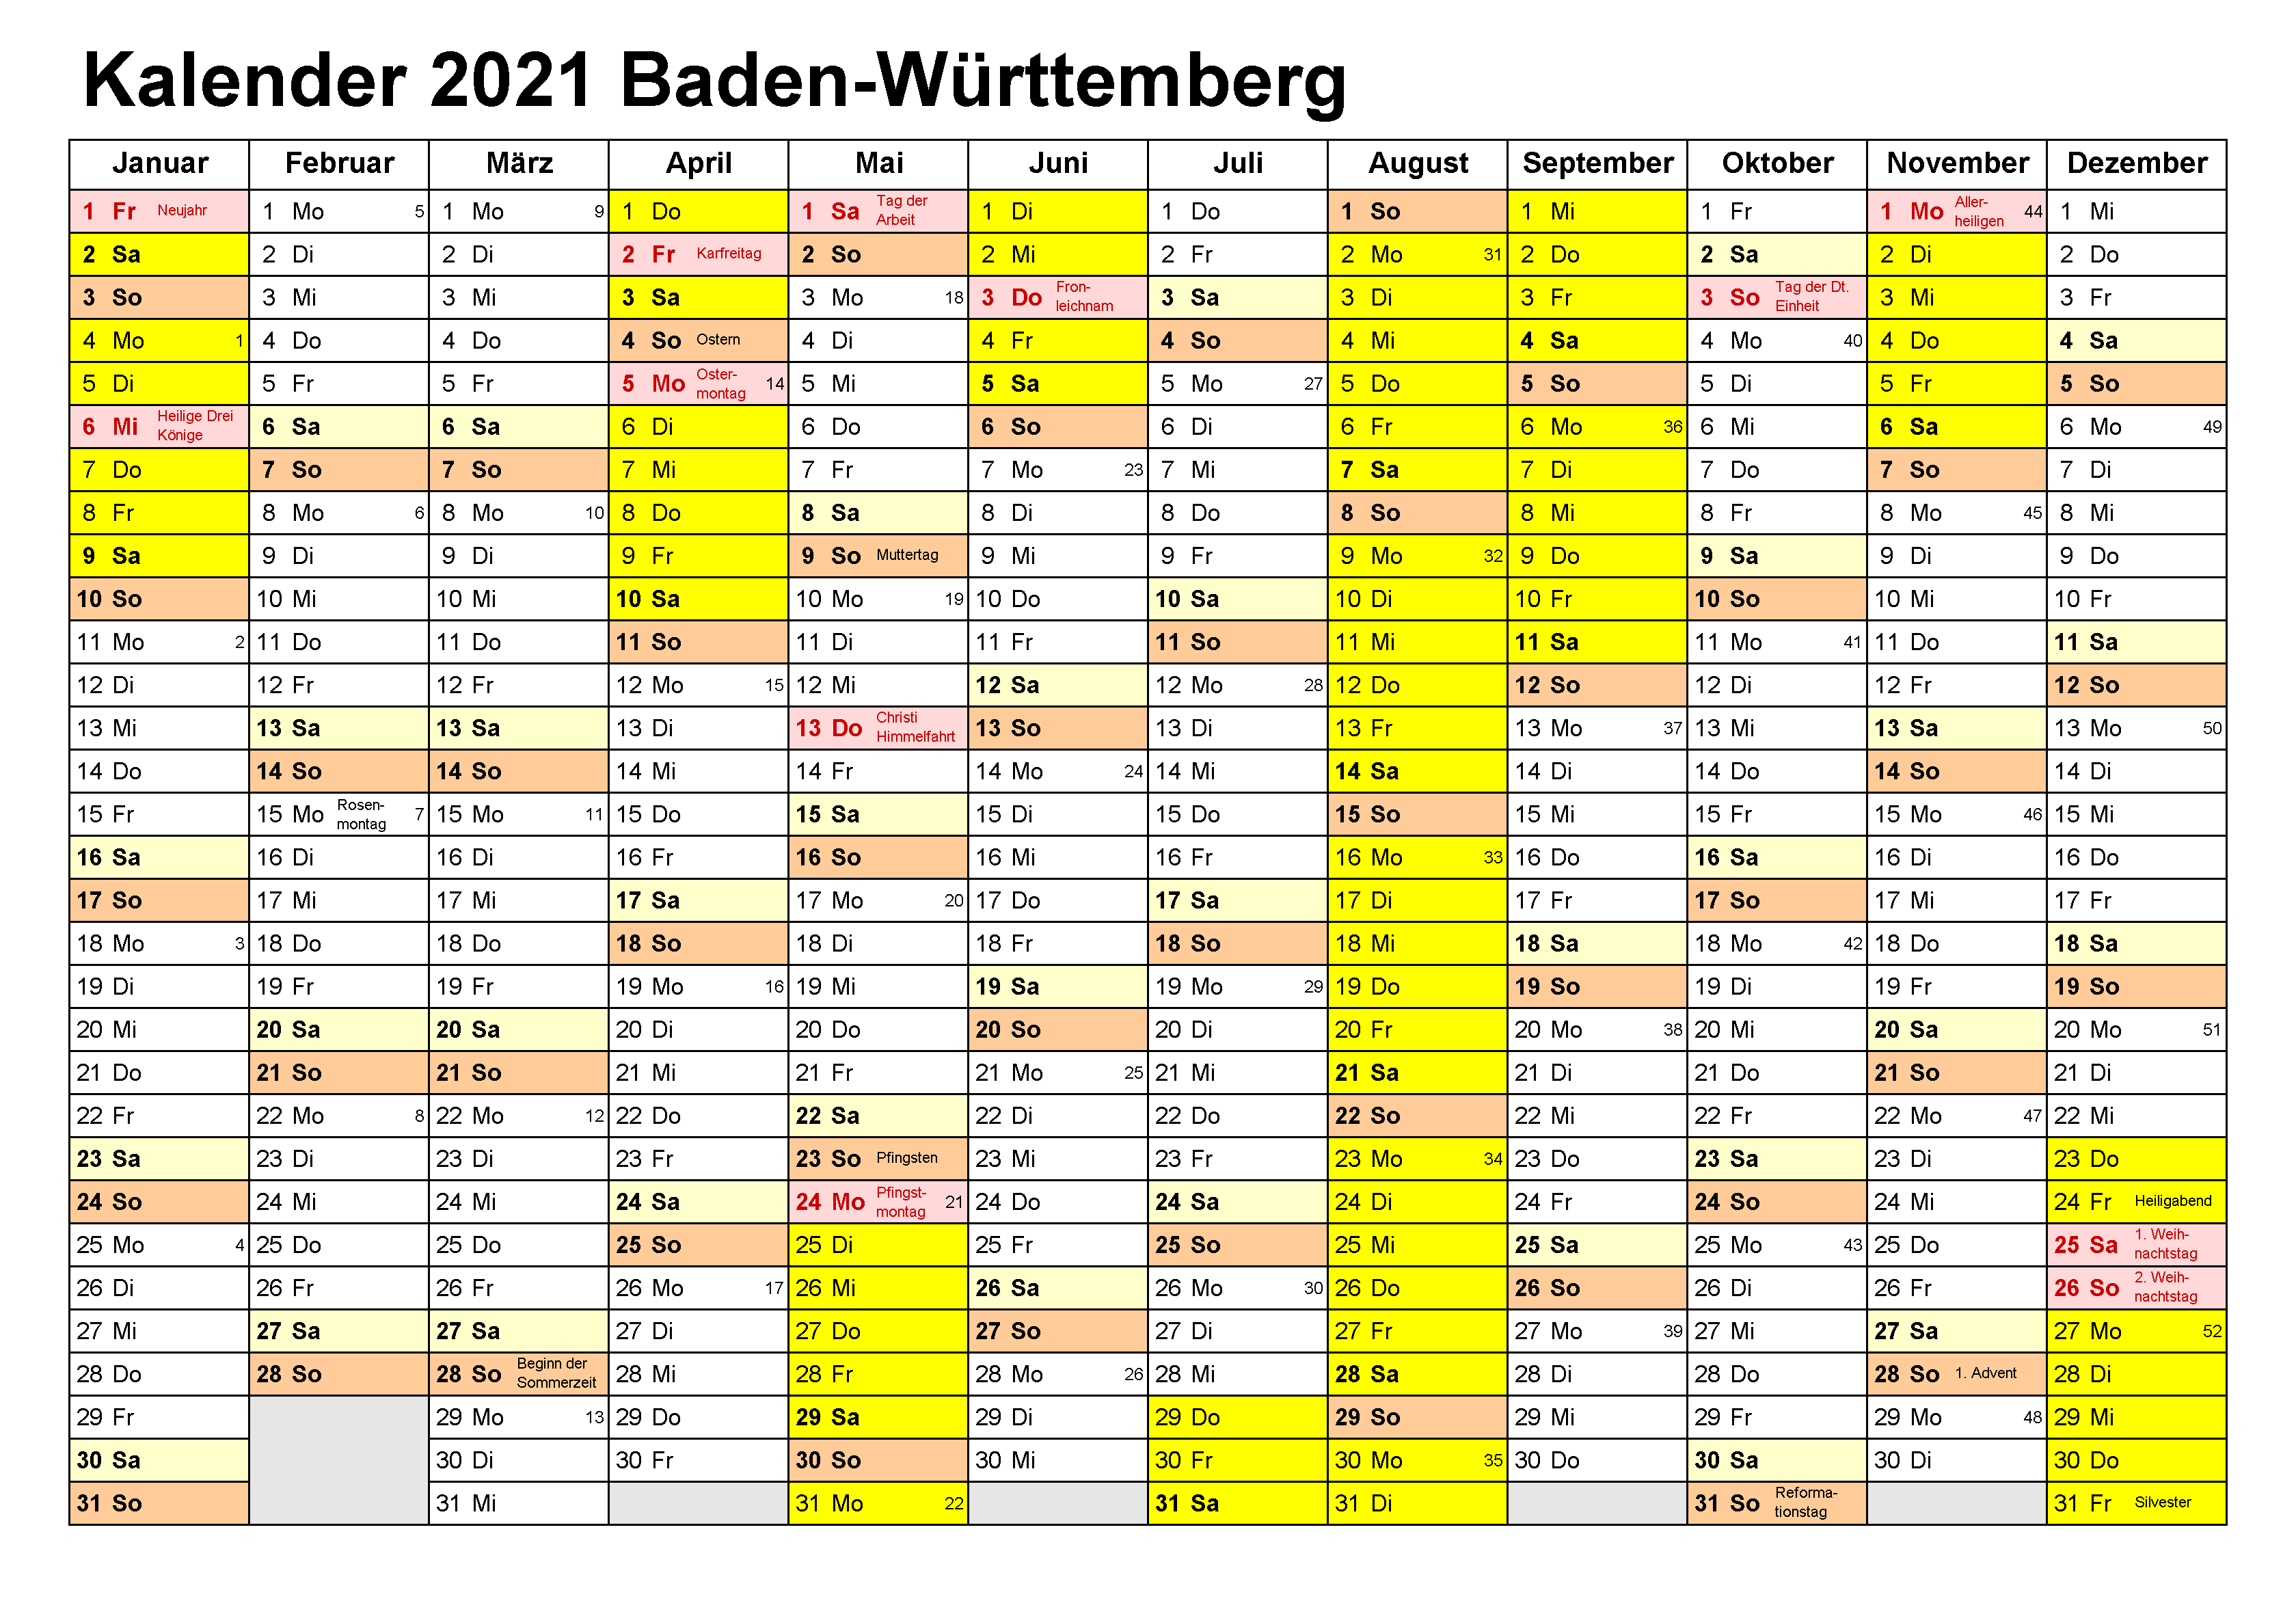 Kalender Baden-Württemberg 2021 Zum Ausdrucken